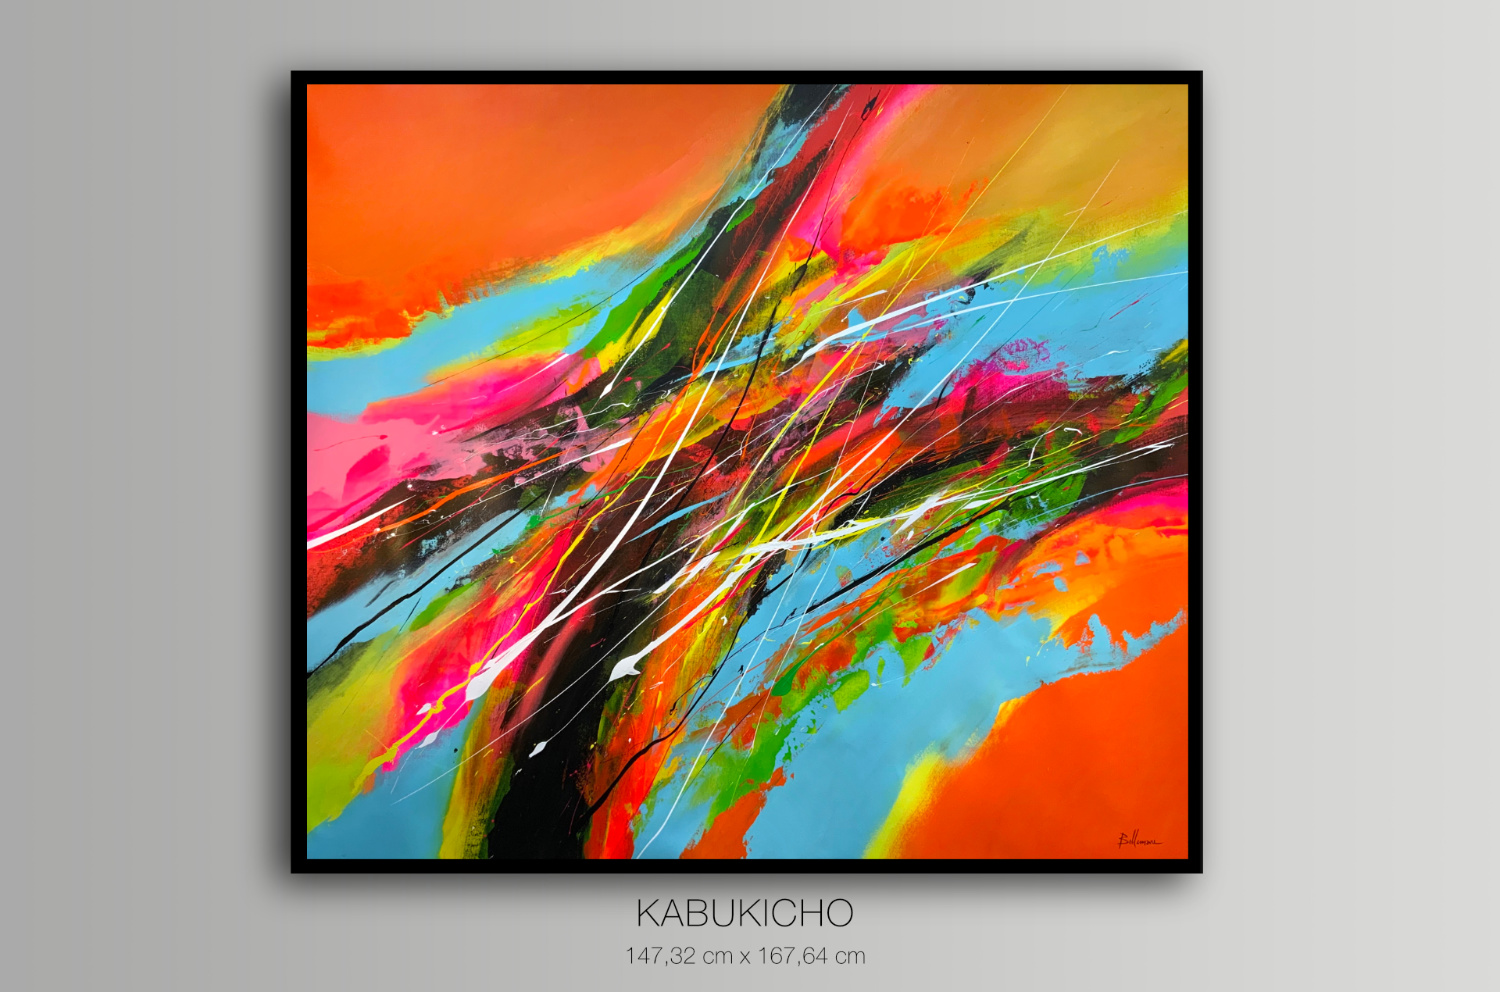 Kubichiko - Featured